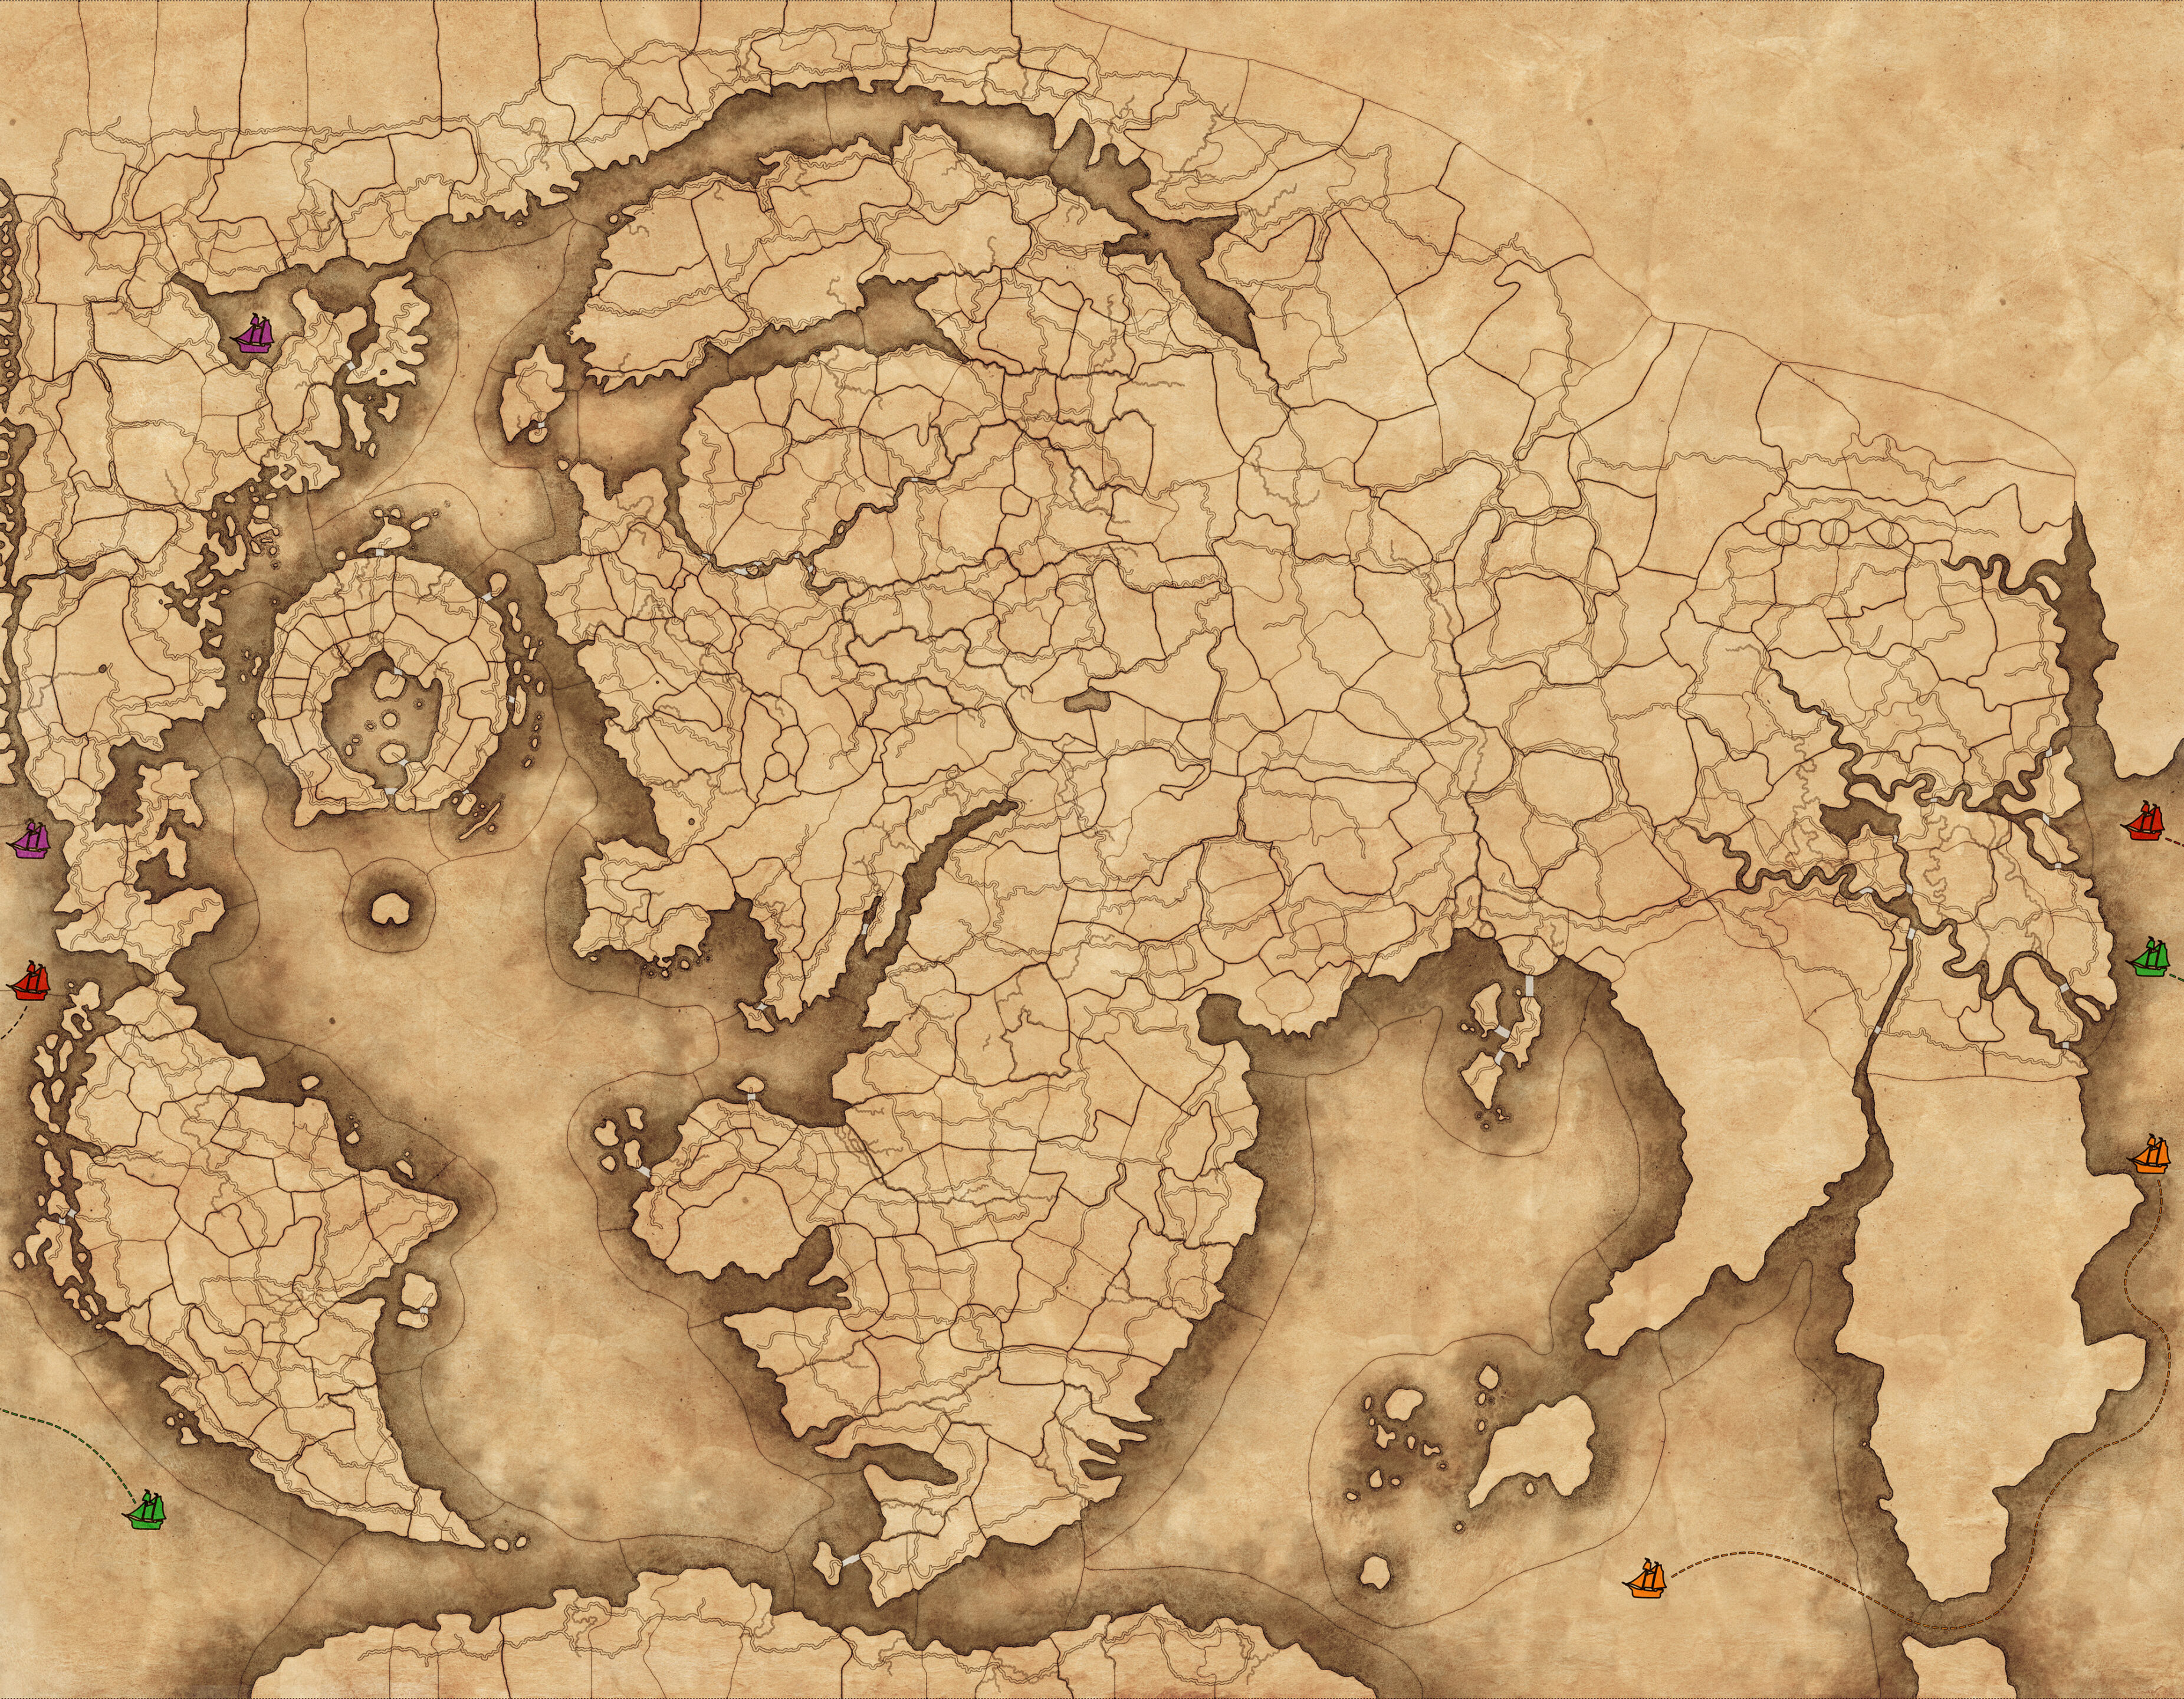 Dünyanın büyük mesafelerini geçmek için kullanılabilecek deniz şeritlerini temsil eden renkli tekne simgeleri de dahil olmak üzere Ölümsüz Empires oyun modu haritasının bir görüntüsü